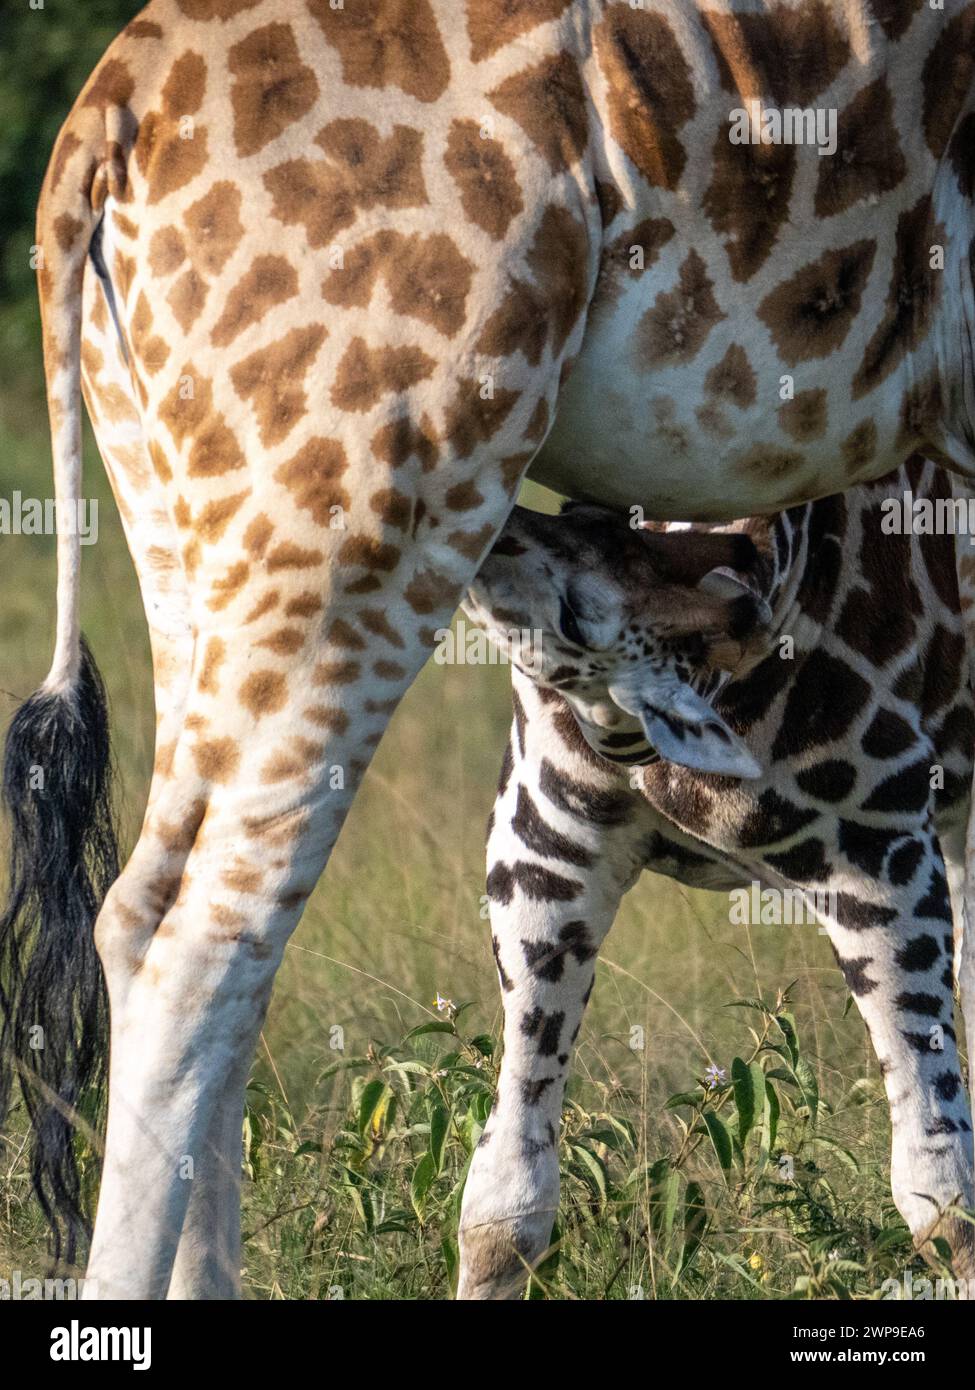 Girafe de bébé allaité (Giraffa camelopardalis rothschildi) dans le parc national de Mburo en Ouganda. Le bébé girafe a environ 1 mois. Banque D'Images